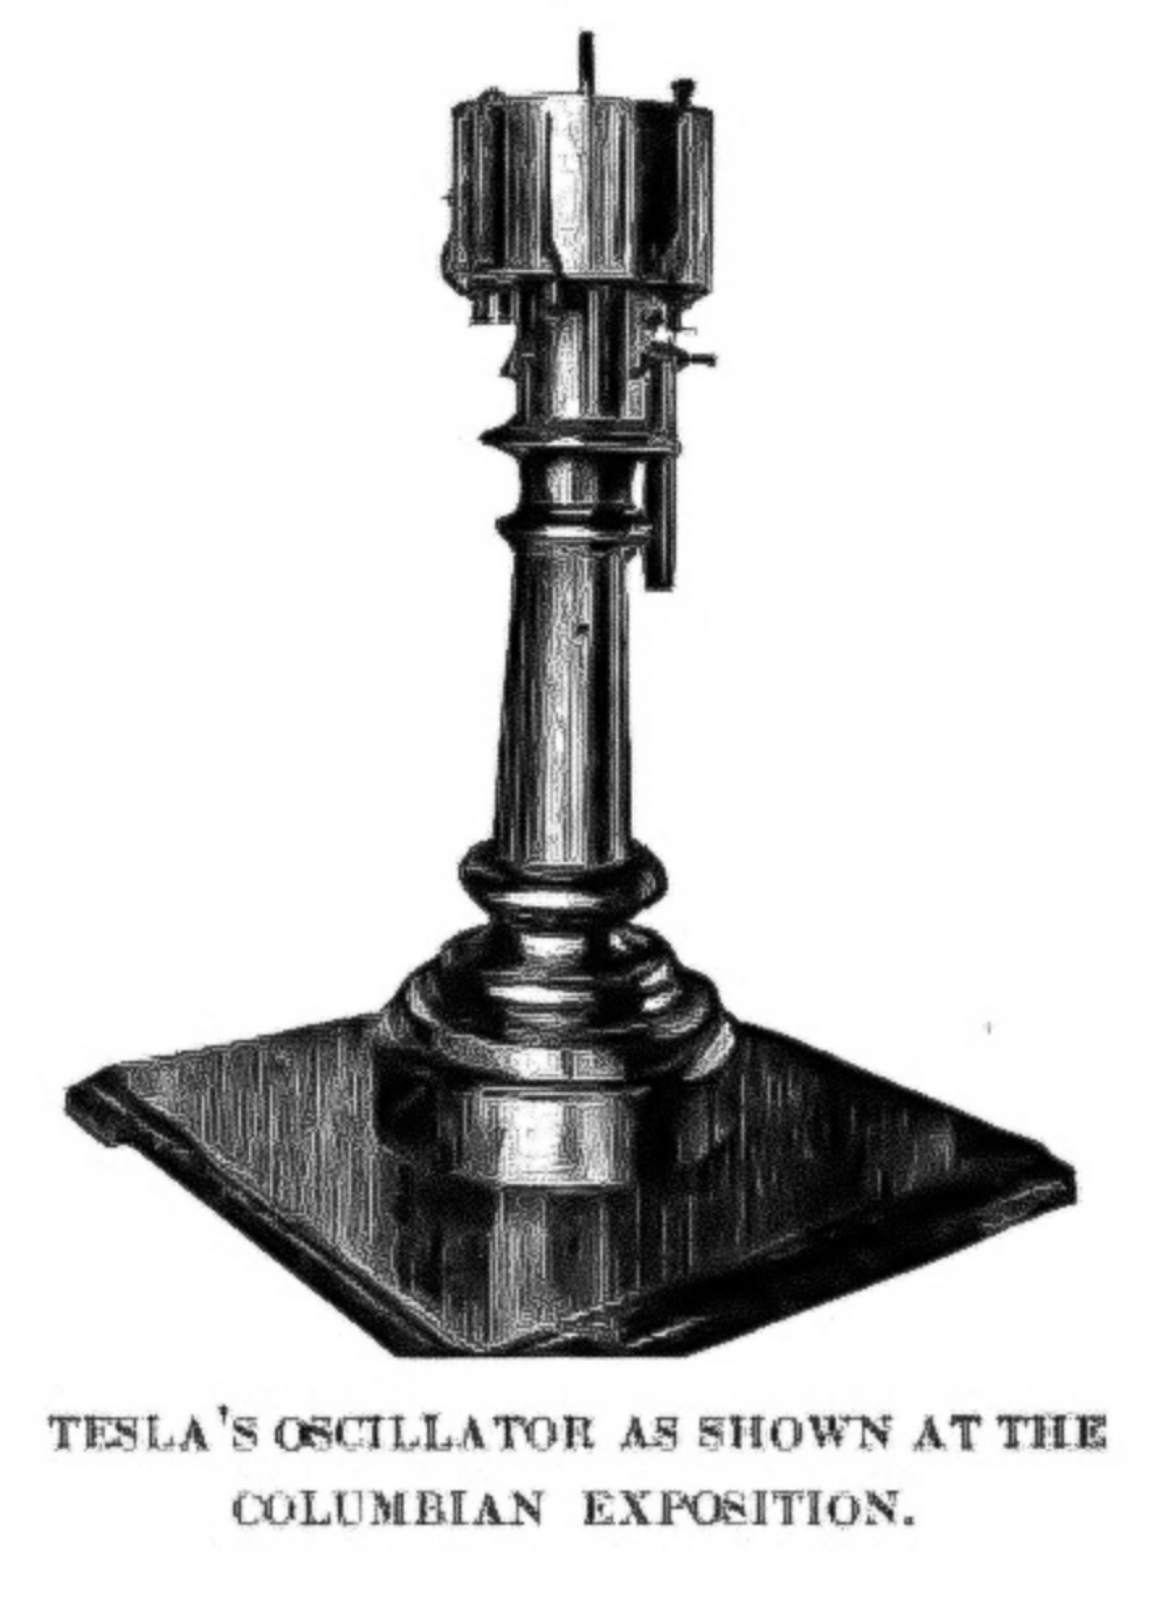 Oscilator elektro-mekanik i Teslës, gjenerator elektrik me avull i patentuar nga Nikola Tesla në 1893.